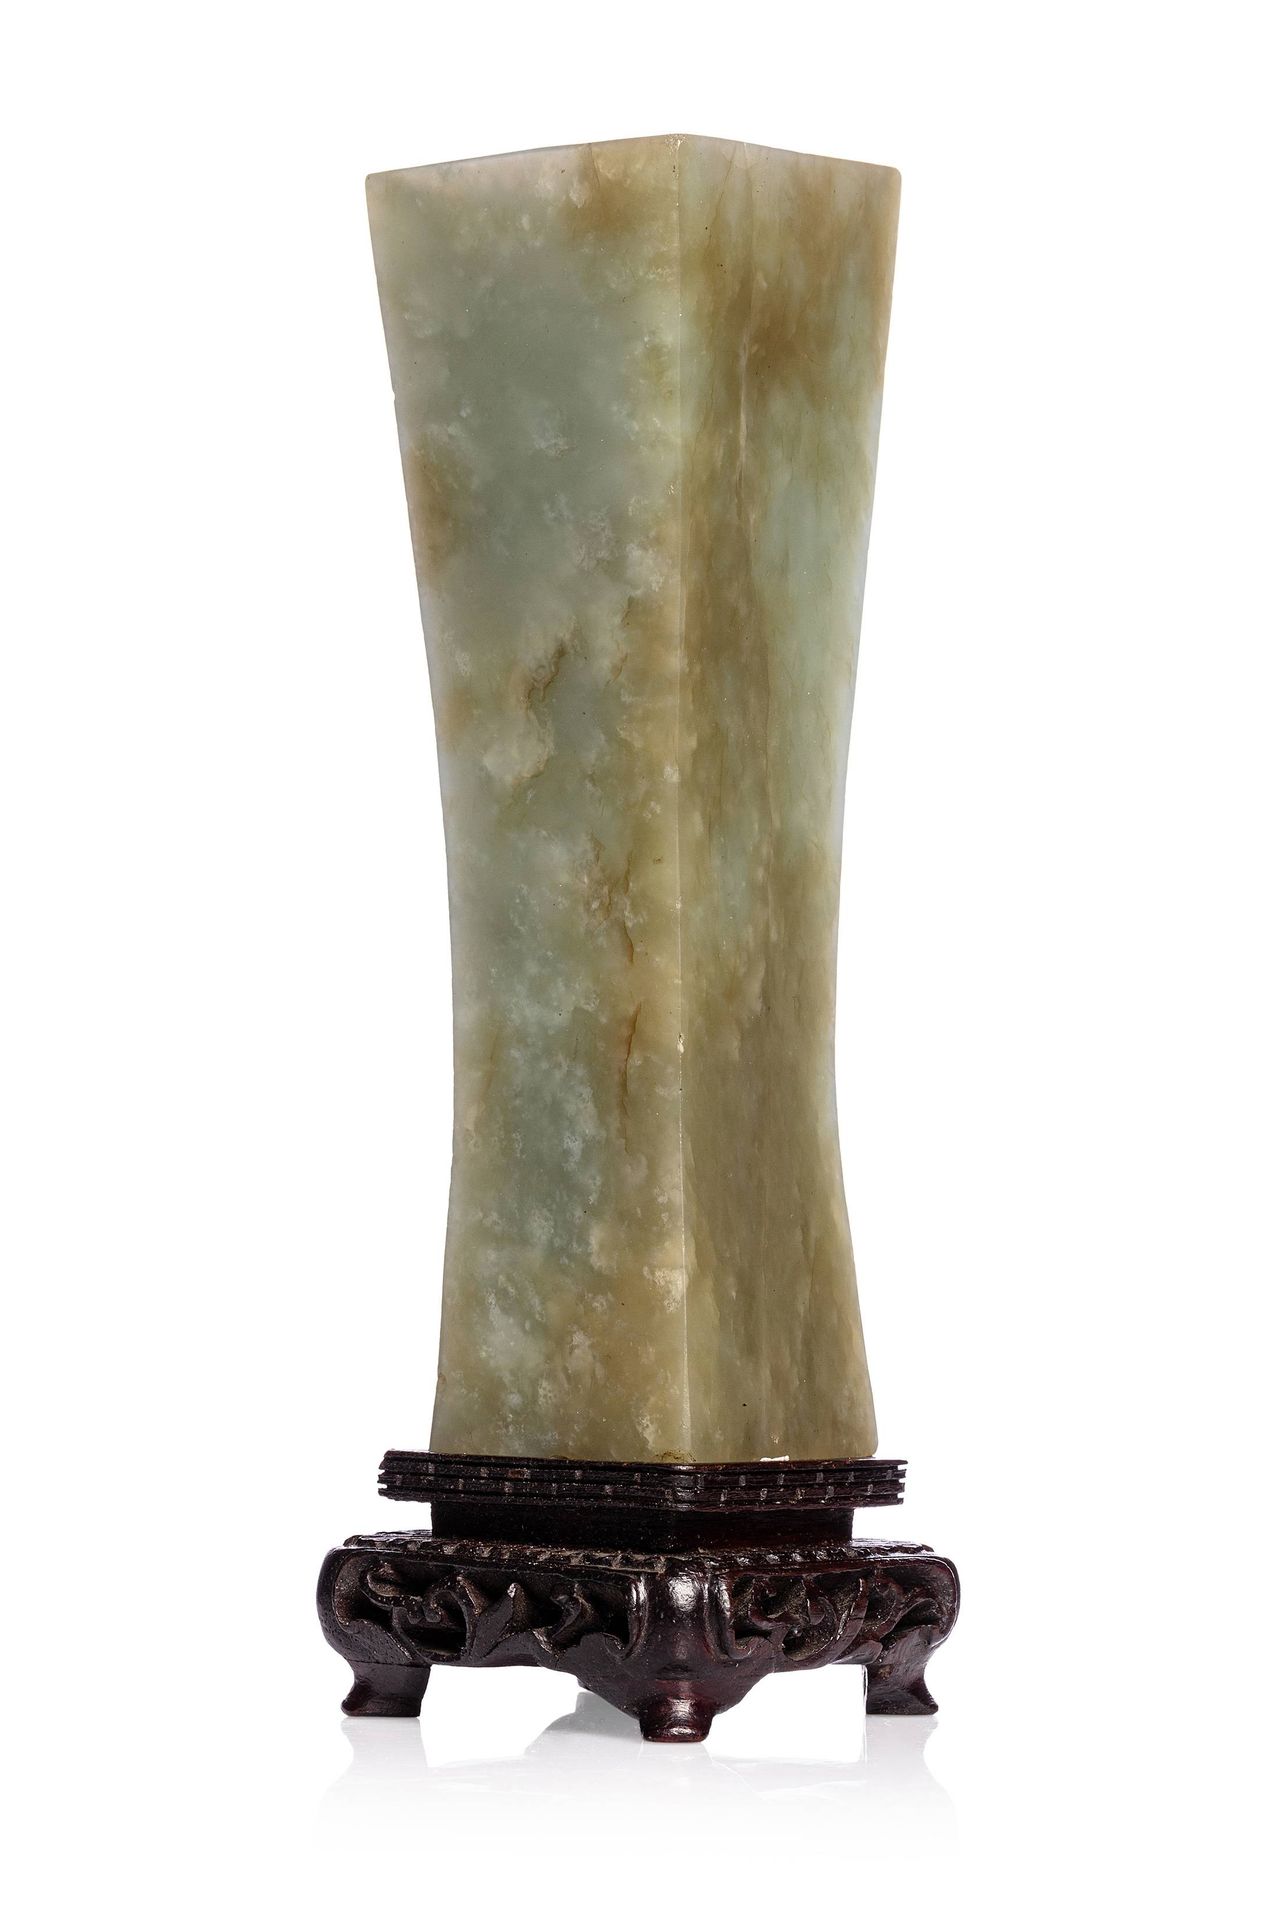 CHINE, XIXe siècle 
Vase miniature en jade céladon A section carrée. La pierre à&hellip;